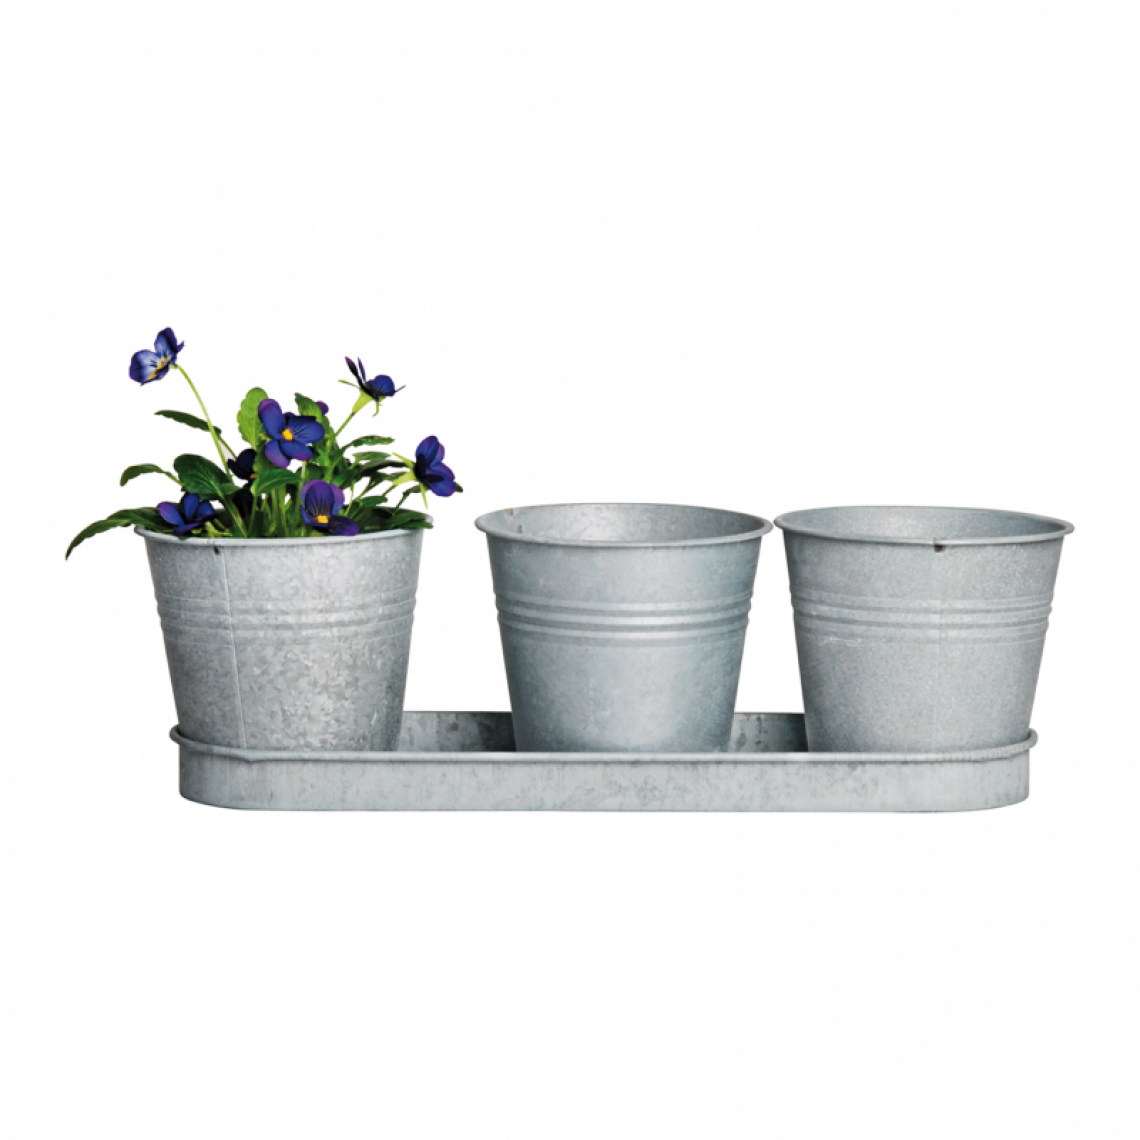 Ac-Deco - Lot de 3 pots à fleurs avec soucoupe en zinc patiné - 11,1 x 32,8 x 10,5 cm - Gris - Poterie, bac à fleurs